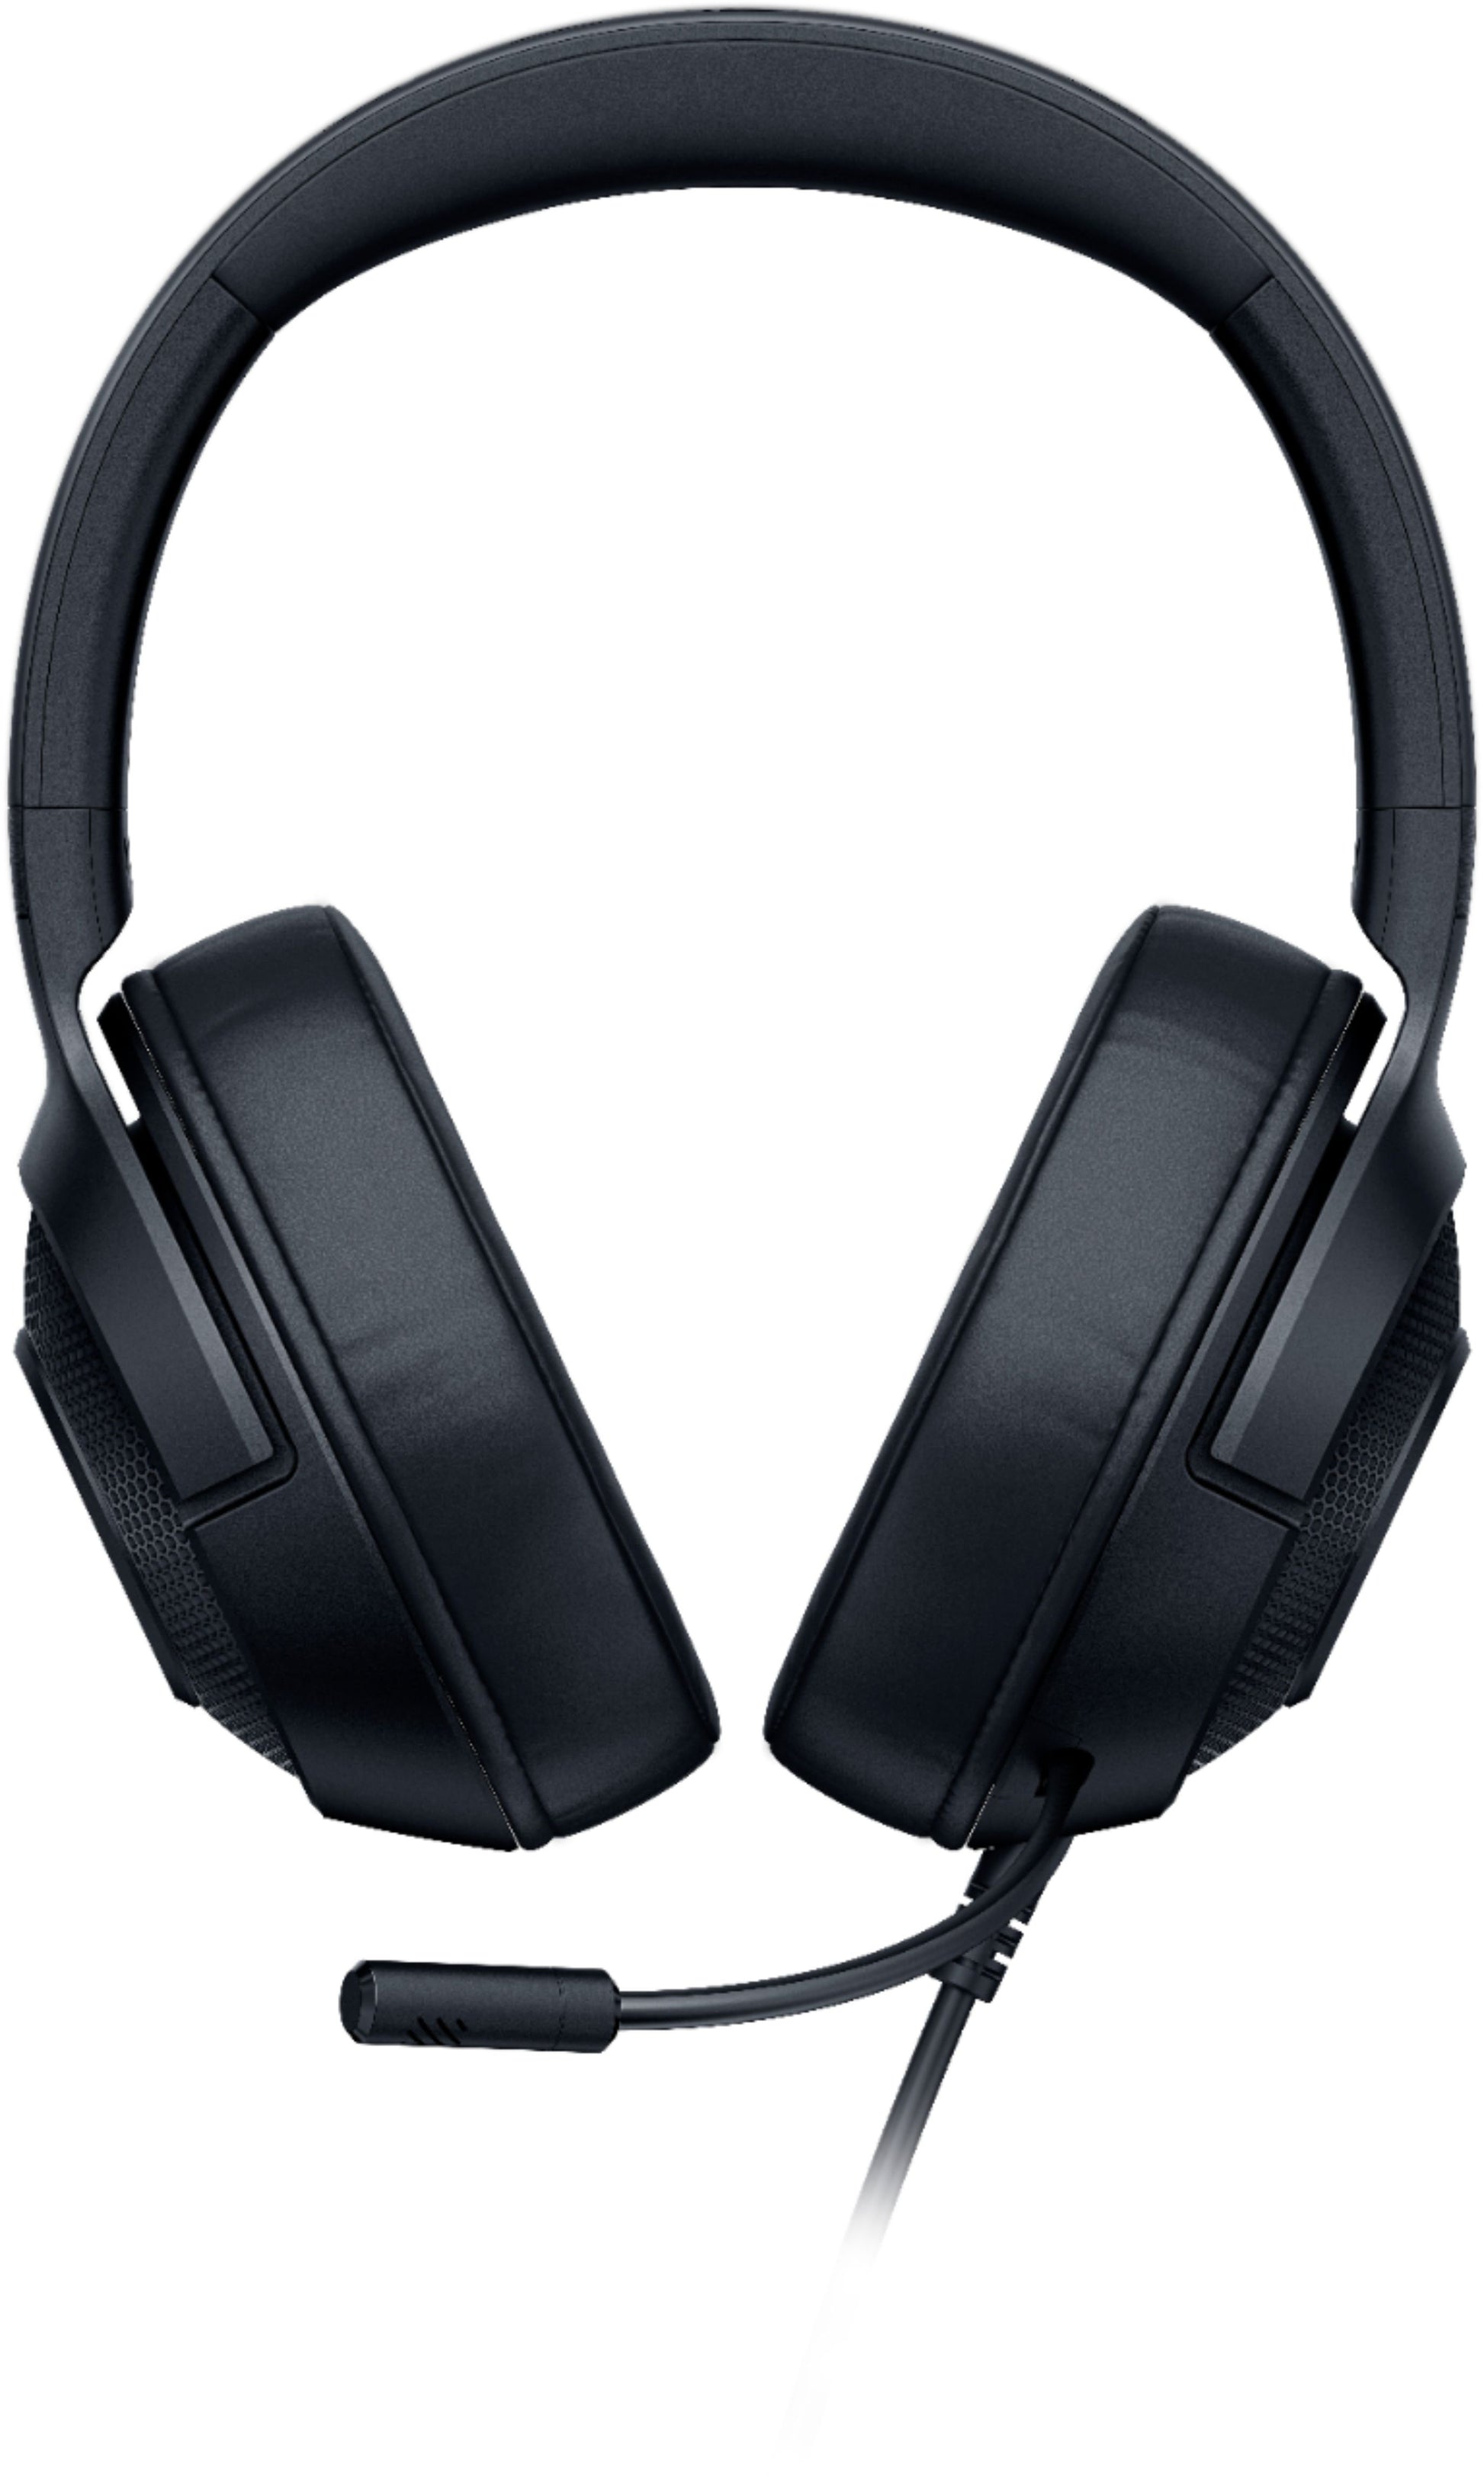 razer-kraken-x-ultralight-gaming-headset-black-4